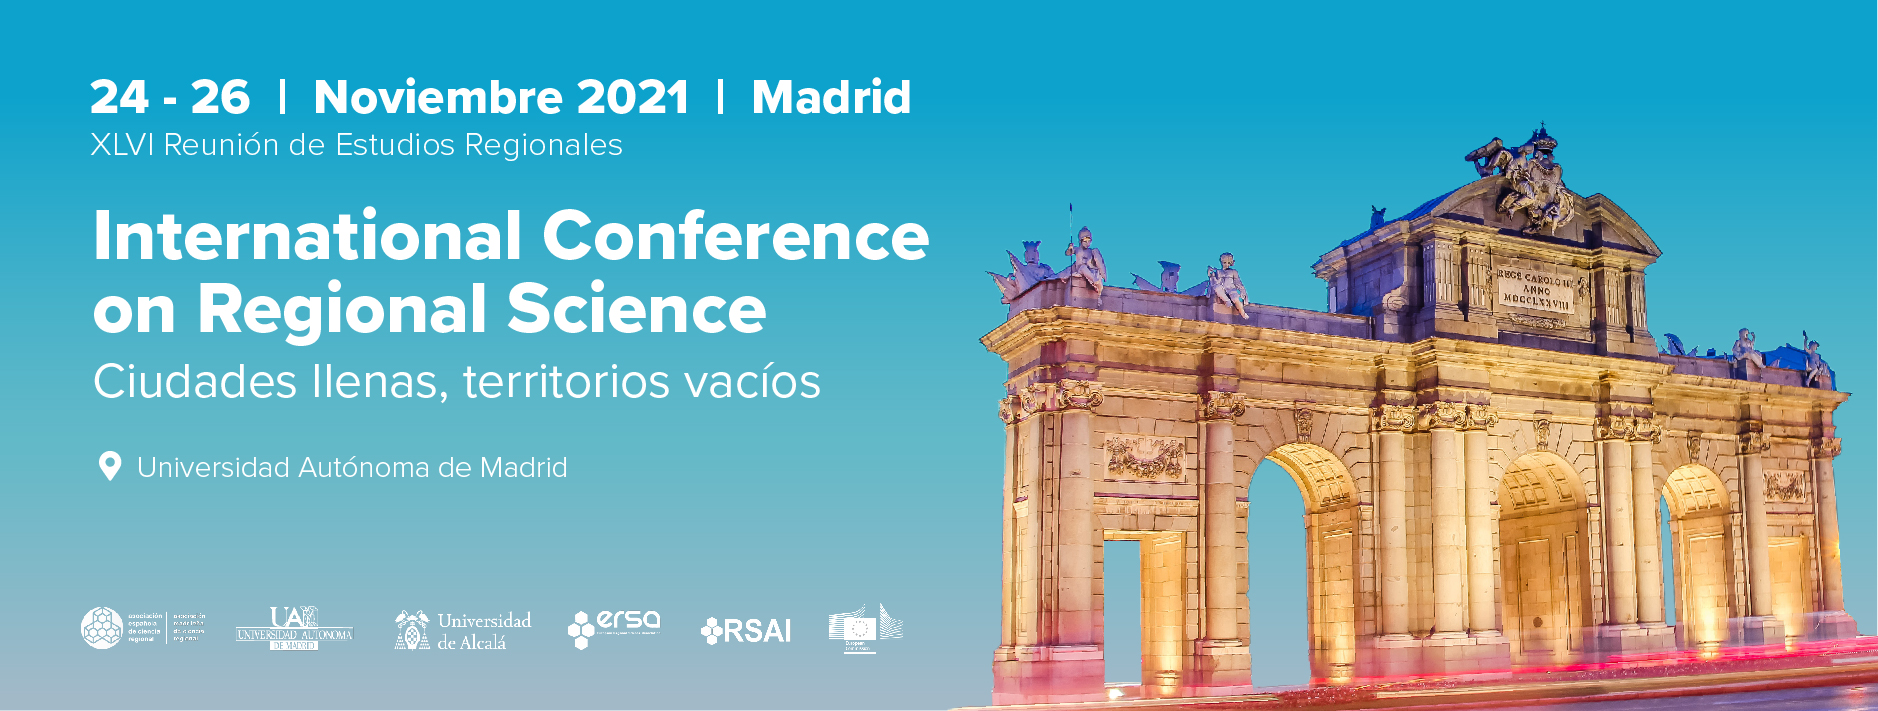 Programa final y desarrollo de las sesiones de la XLVI Reunión de Estudios Regionales – Madrid, 24-26 de noviembre de 2021